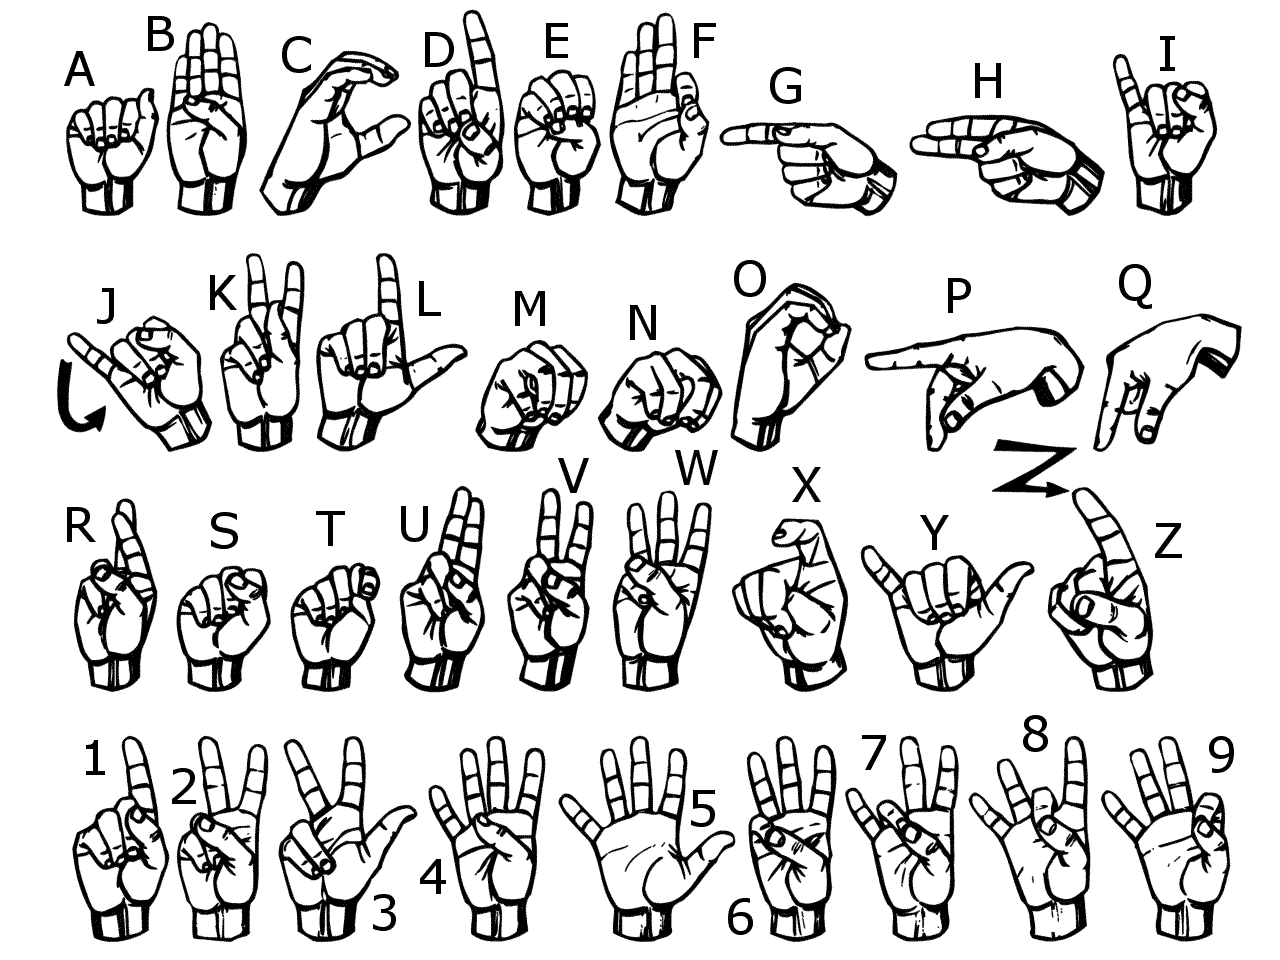 ASL "Gallaudet" type font